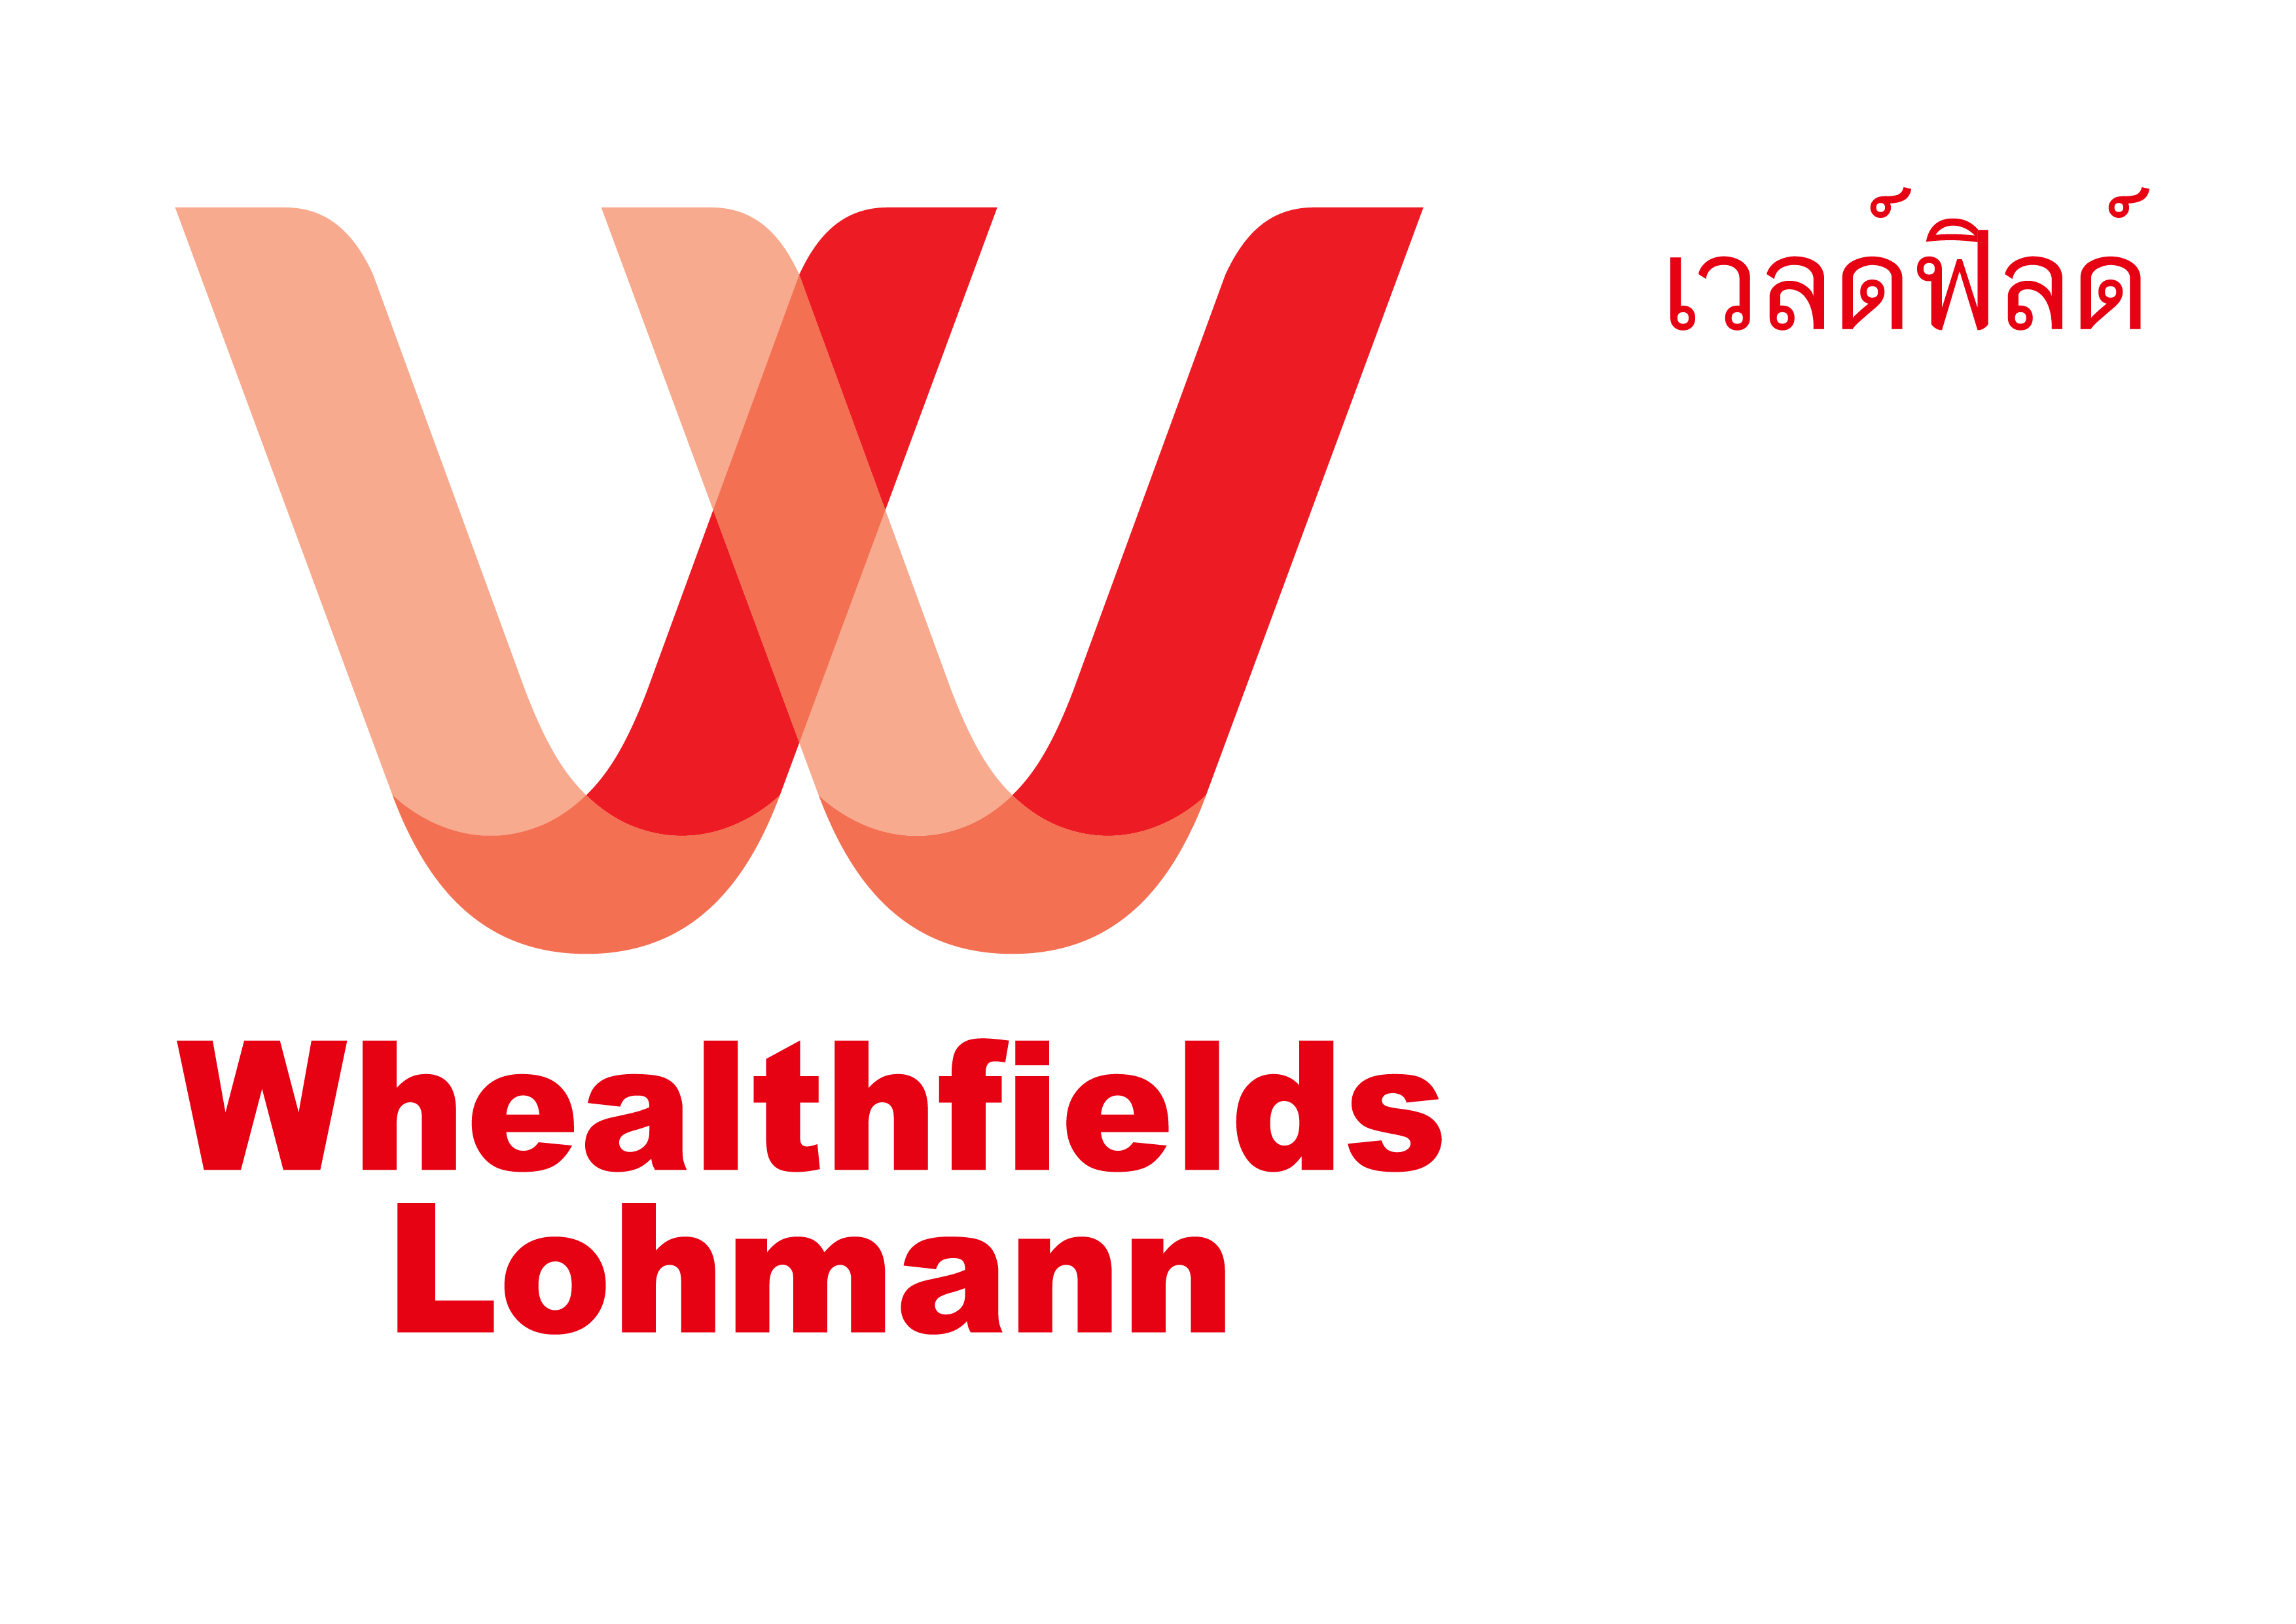 บริษัทเวลด์ฟิลด์ โลฮ์มานน์(ประเทศไทย) จำกัด logo โลโก้